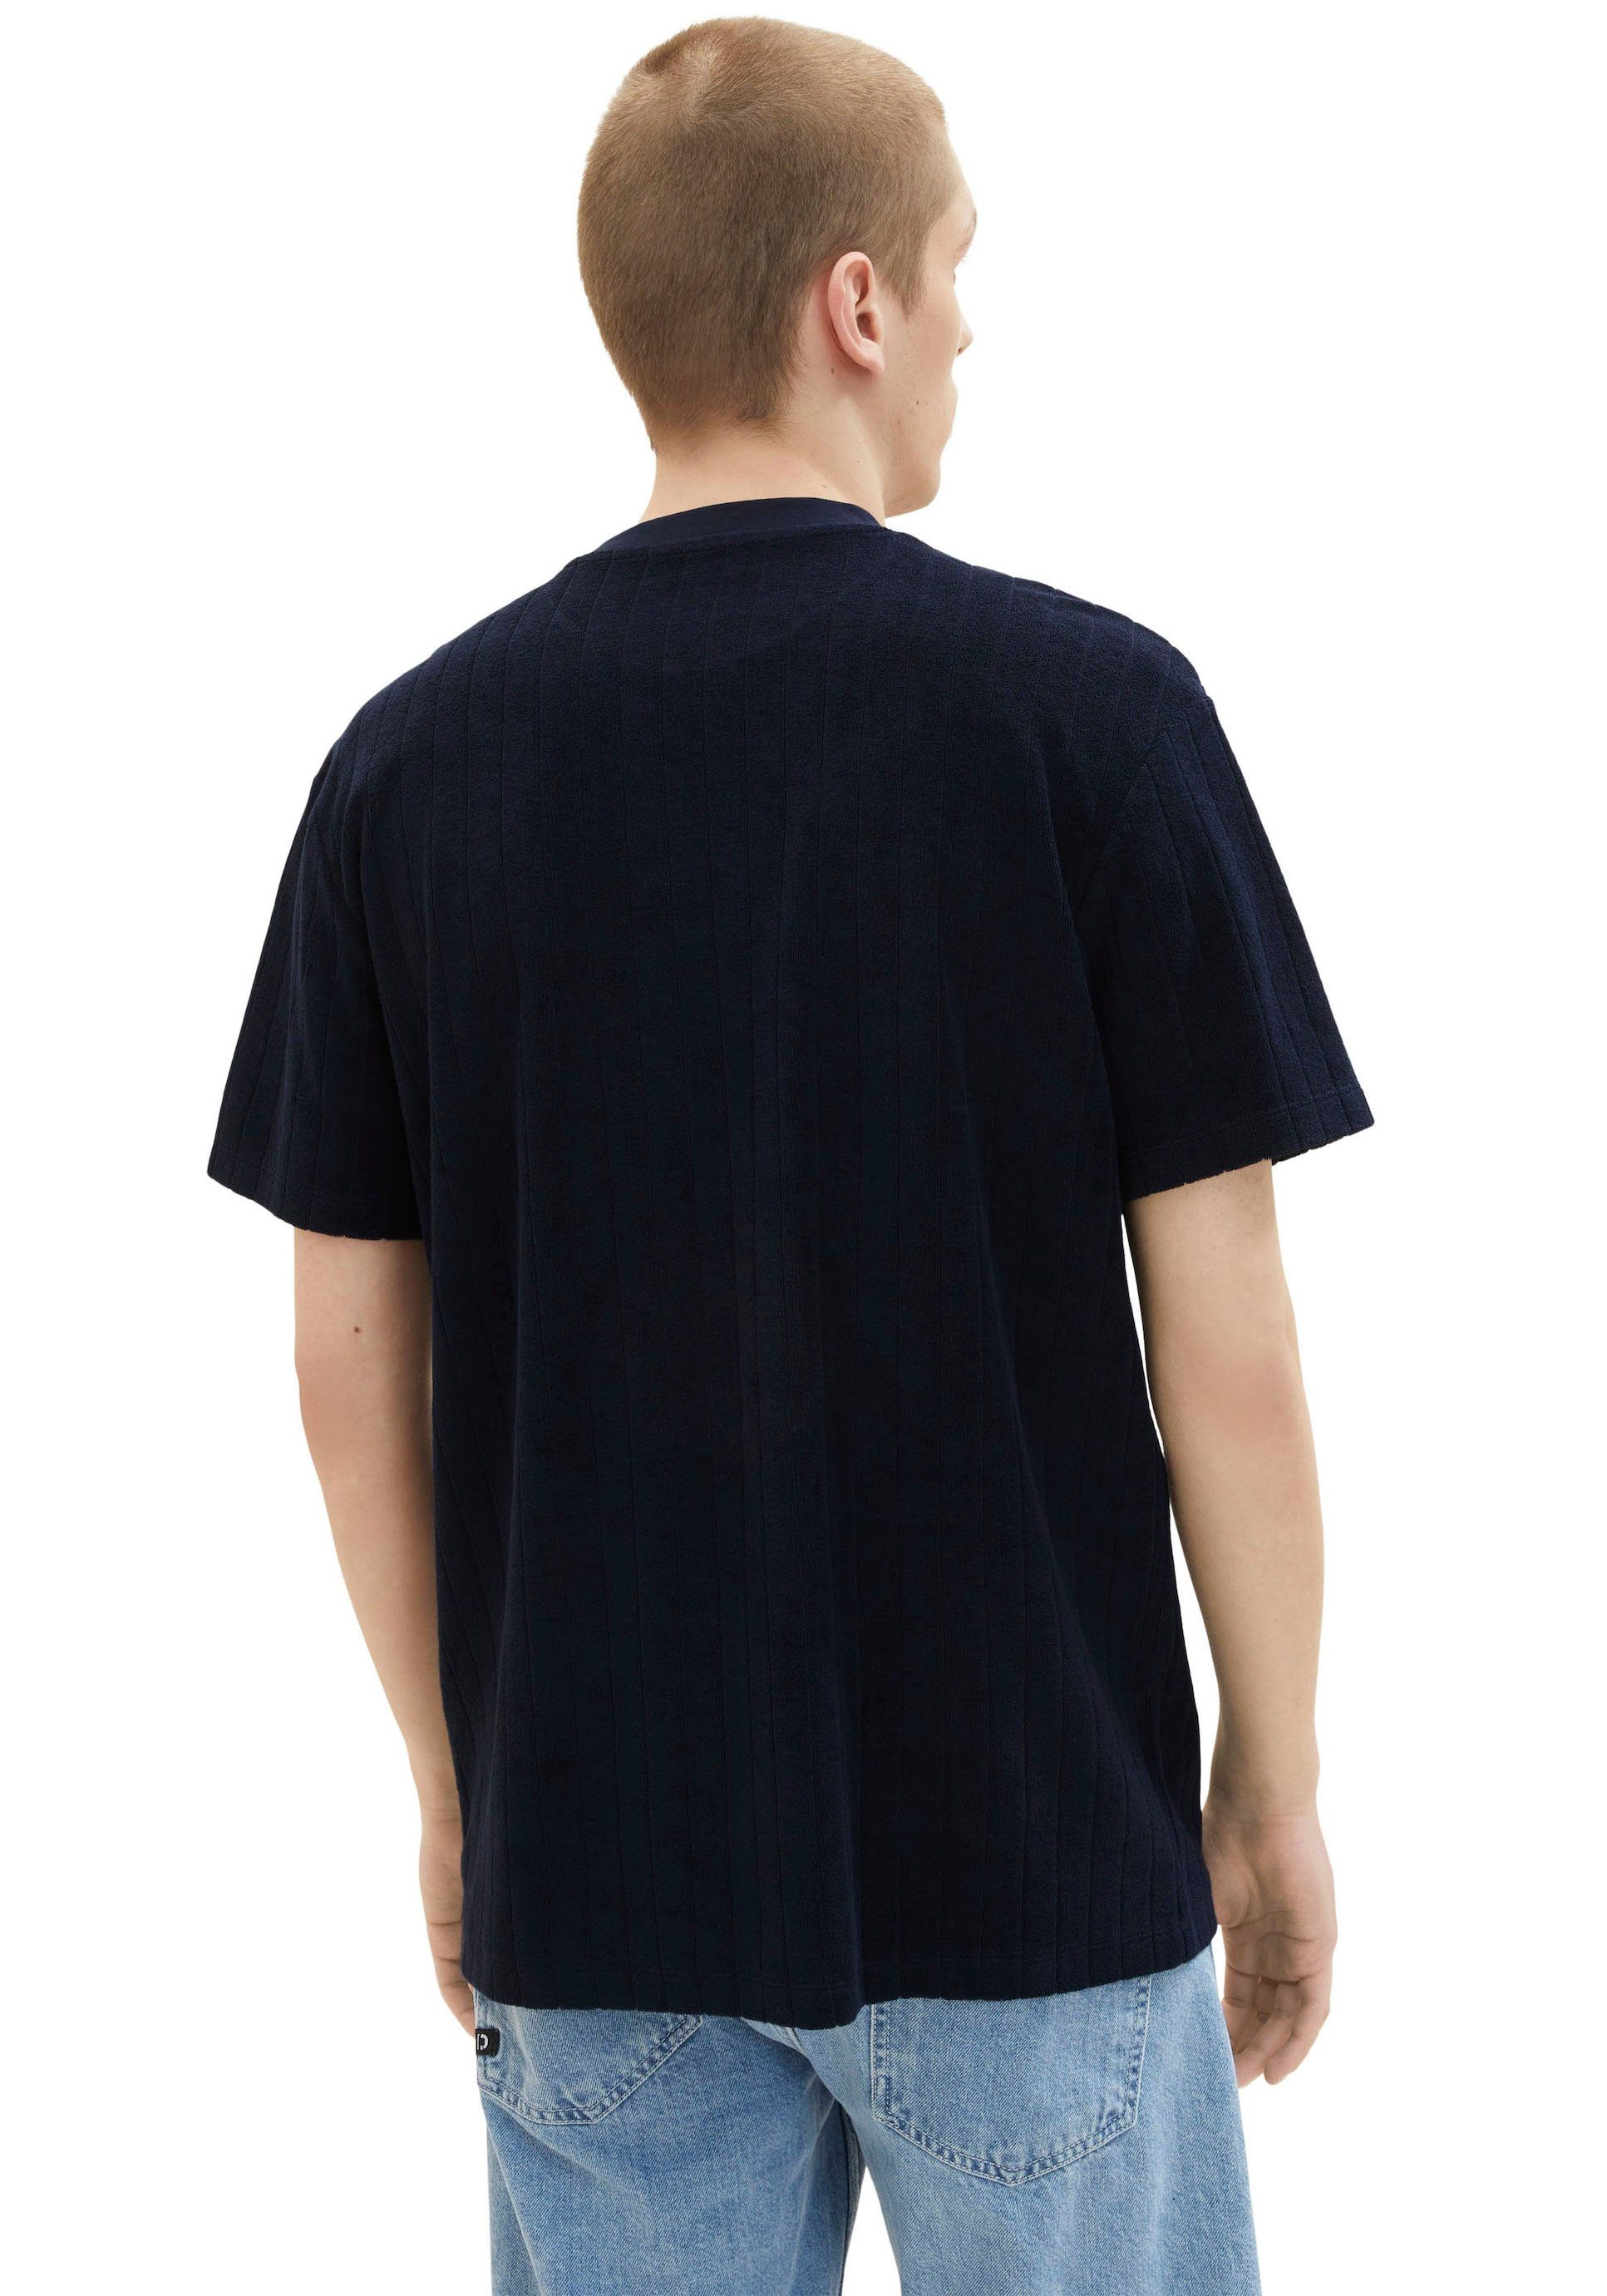 T-Shirt Sweatware TAILOR aus strukturierter Denim TOM navy gemustert